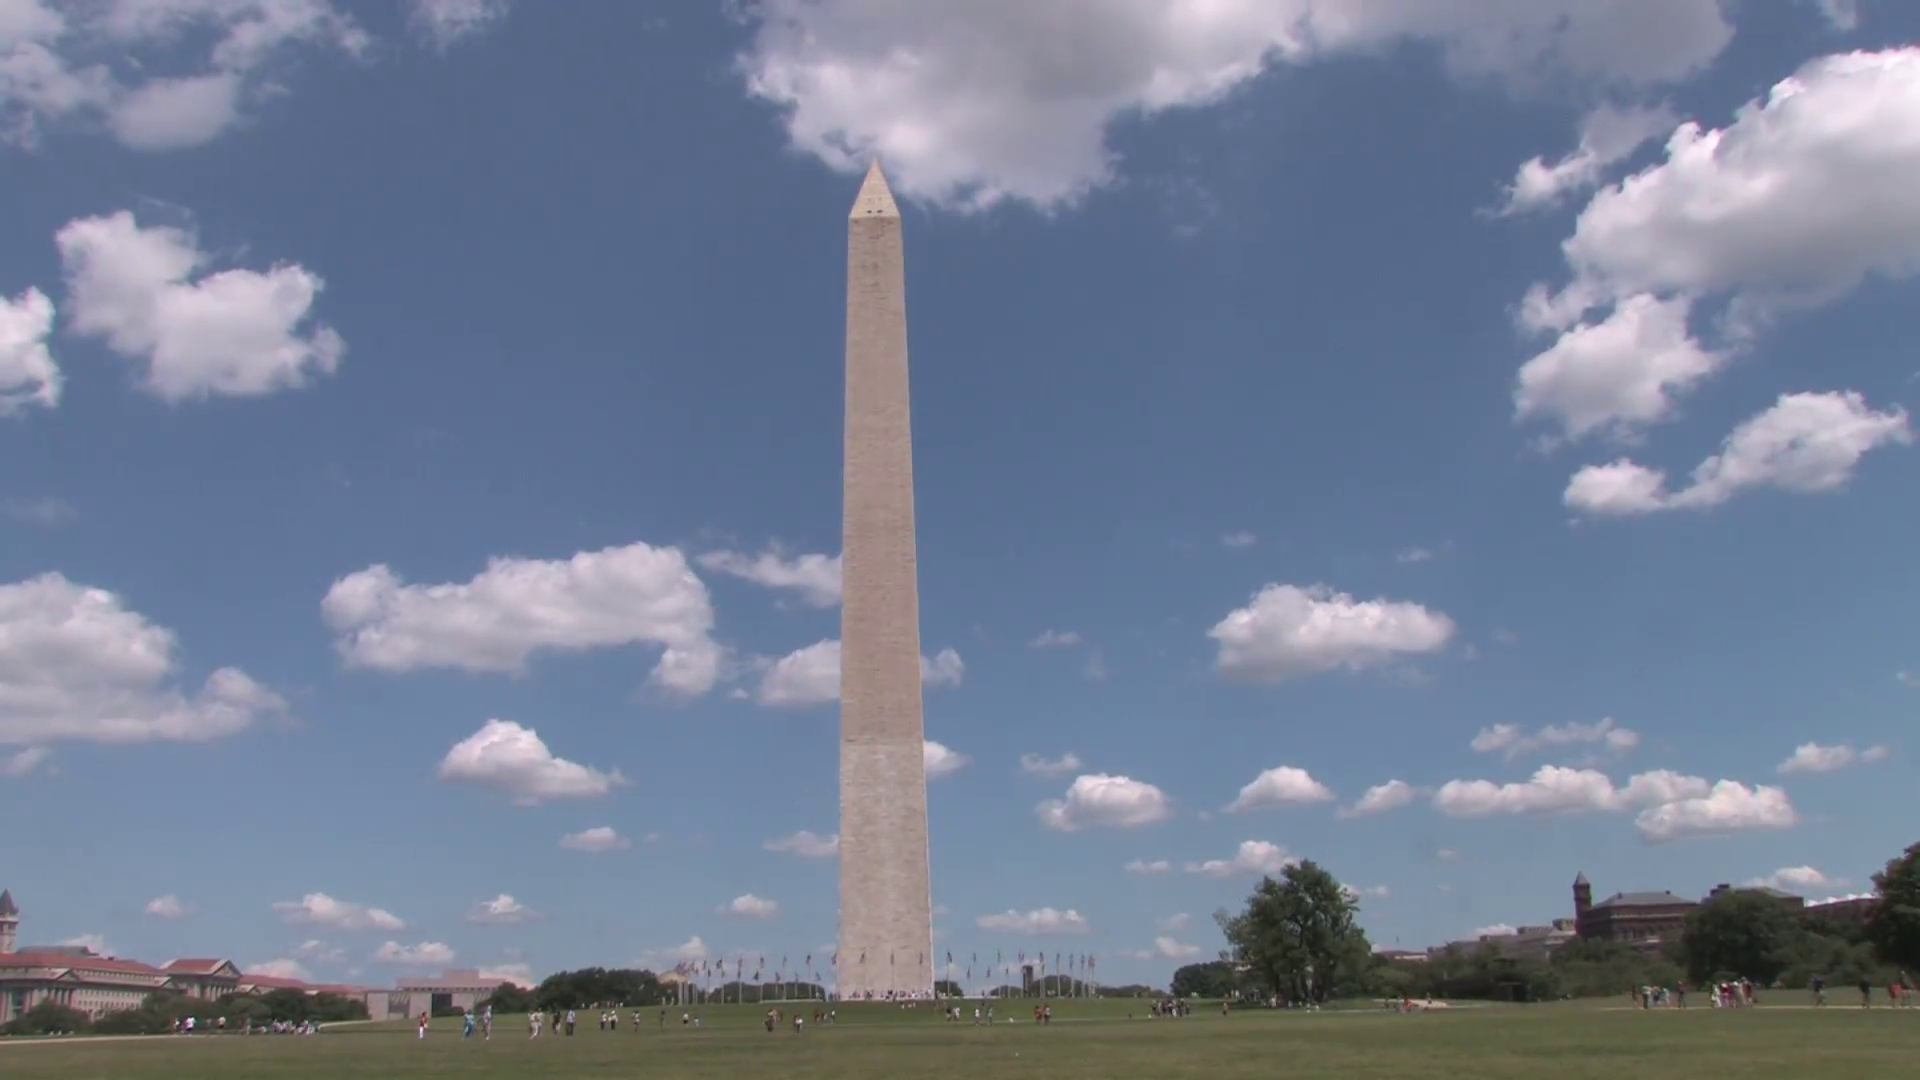 The Washington Monument in Wa